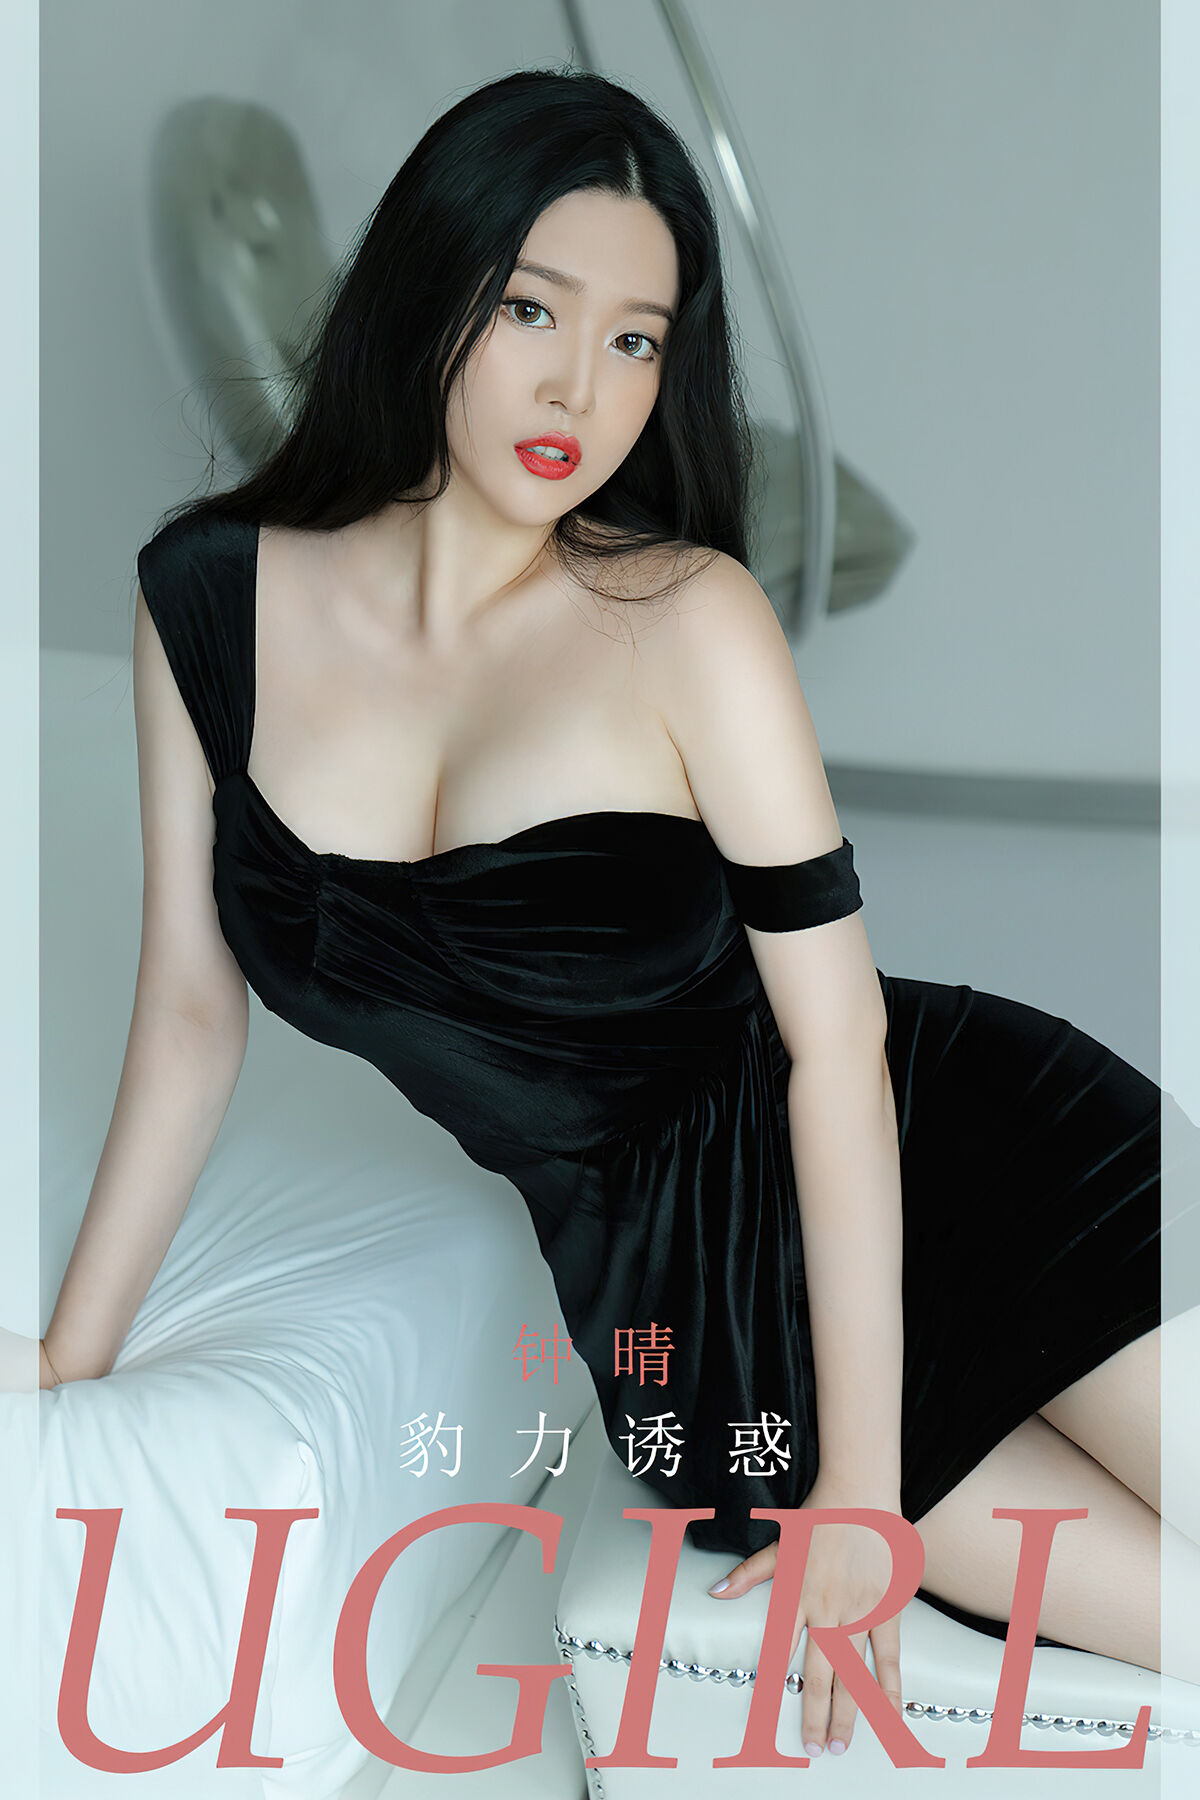 Ugirls App尤果圈 NO.2828 Zhong Qing